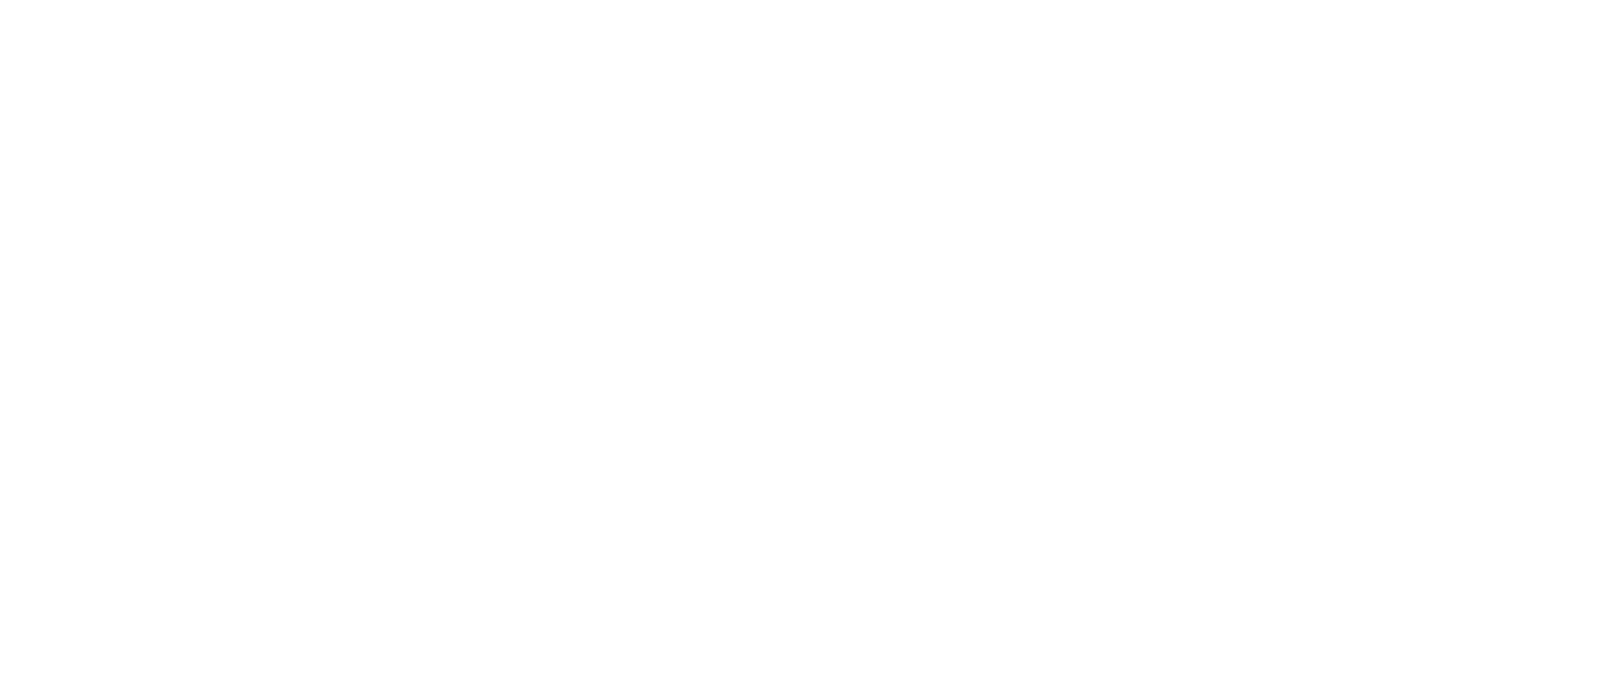 Veris Residential logo large for dark backgrounds (transparent PNG)